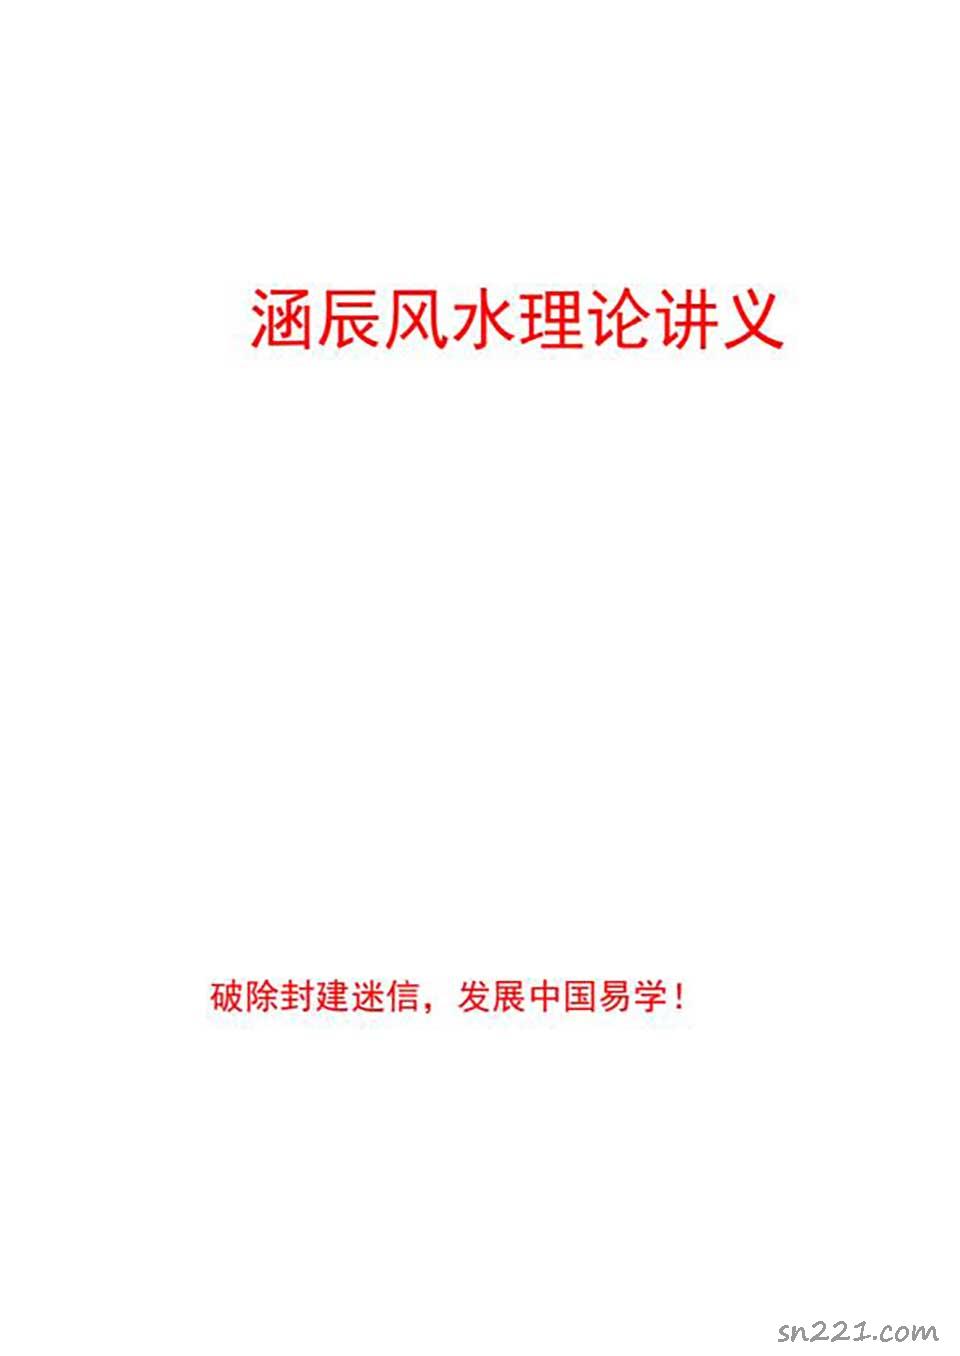 李涵辰-風水班理論講義大綱【經典】44頁.pdf